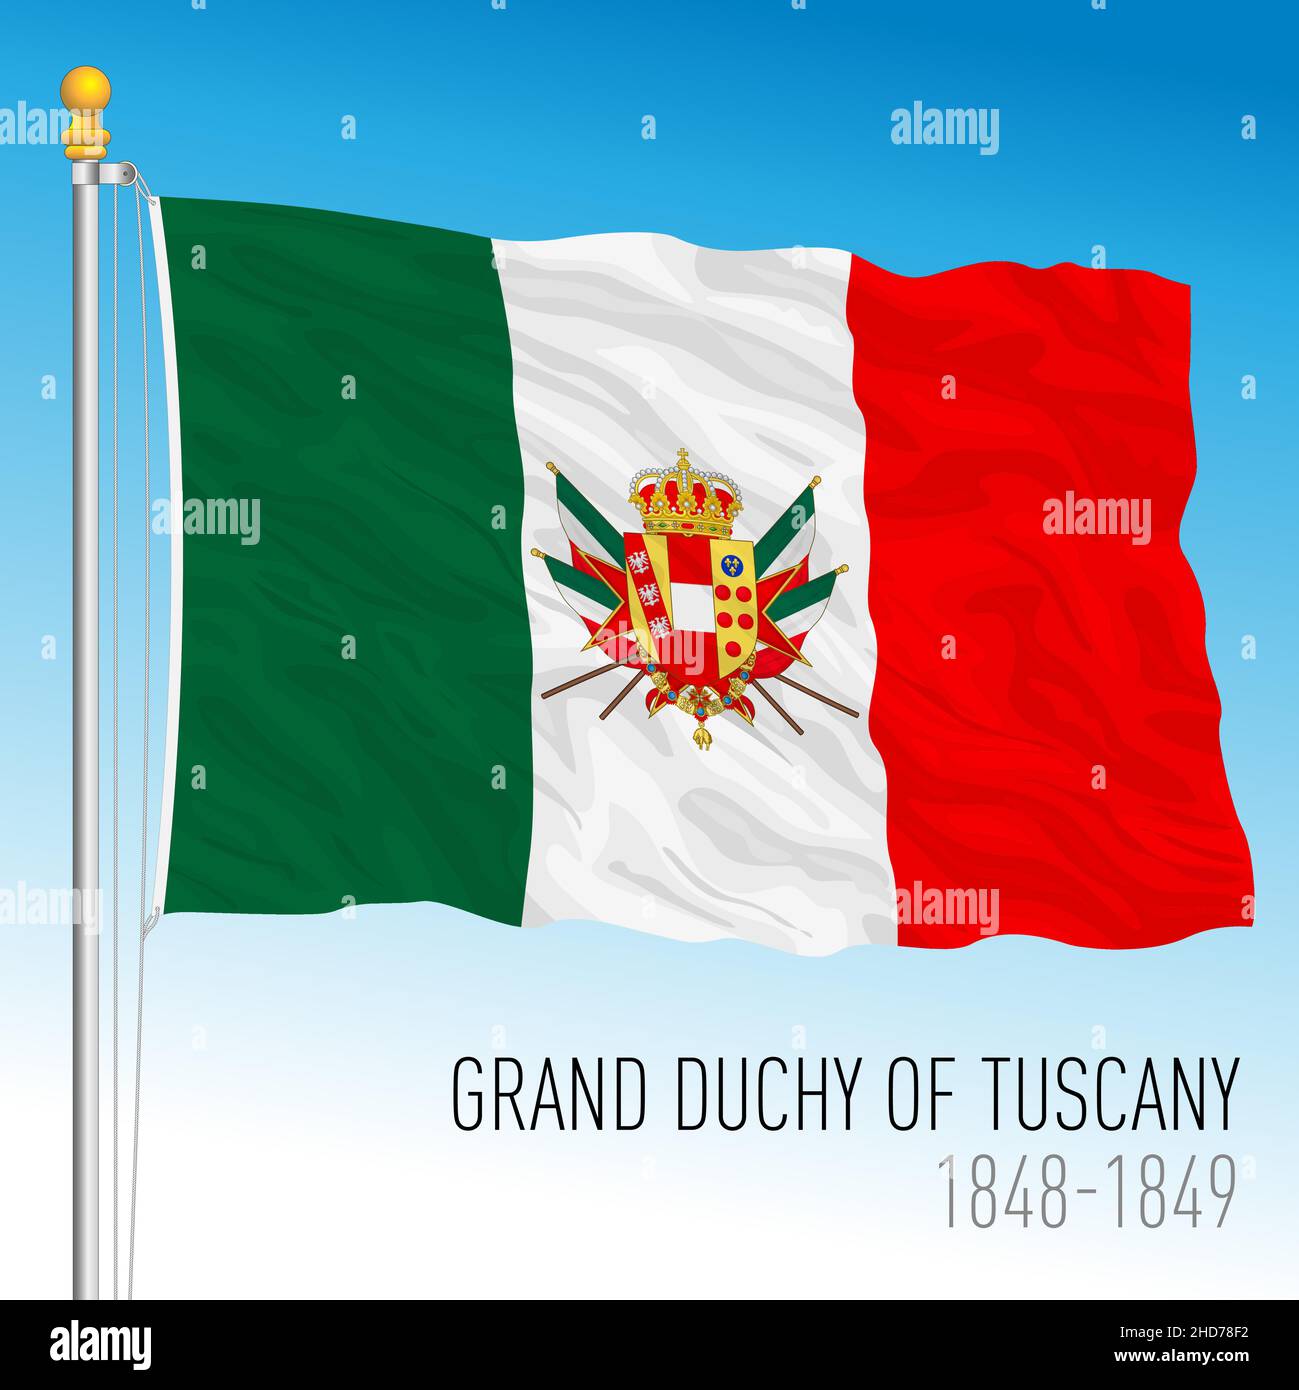 Großherzogtum Toskana historische Staatsflagge, Toskana, Italien, antikes präunitäres Land, 1848 - 1849, vektorgrafik Stock Vektor